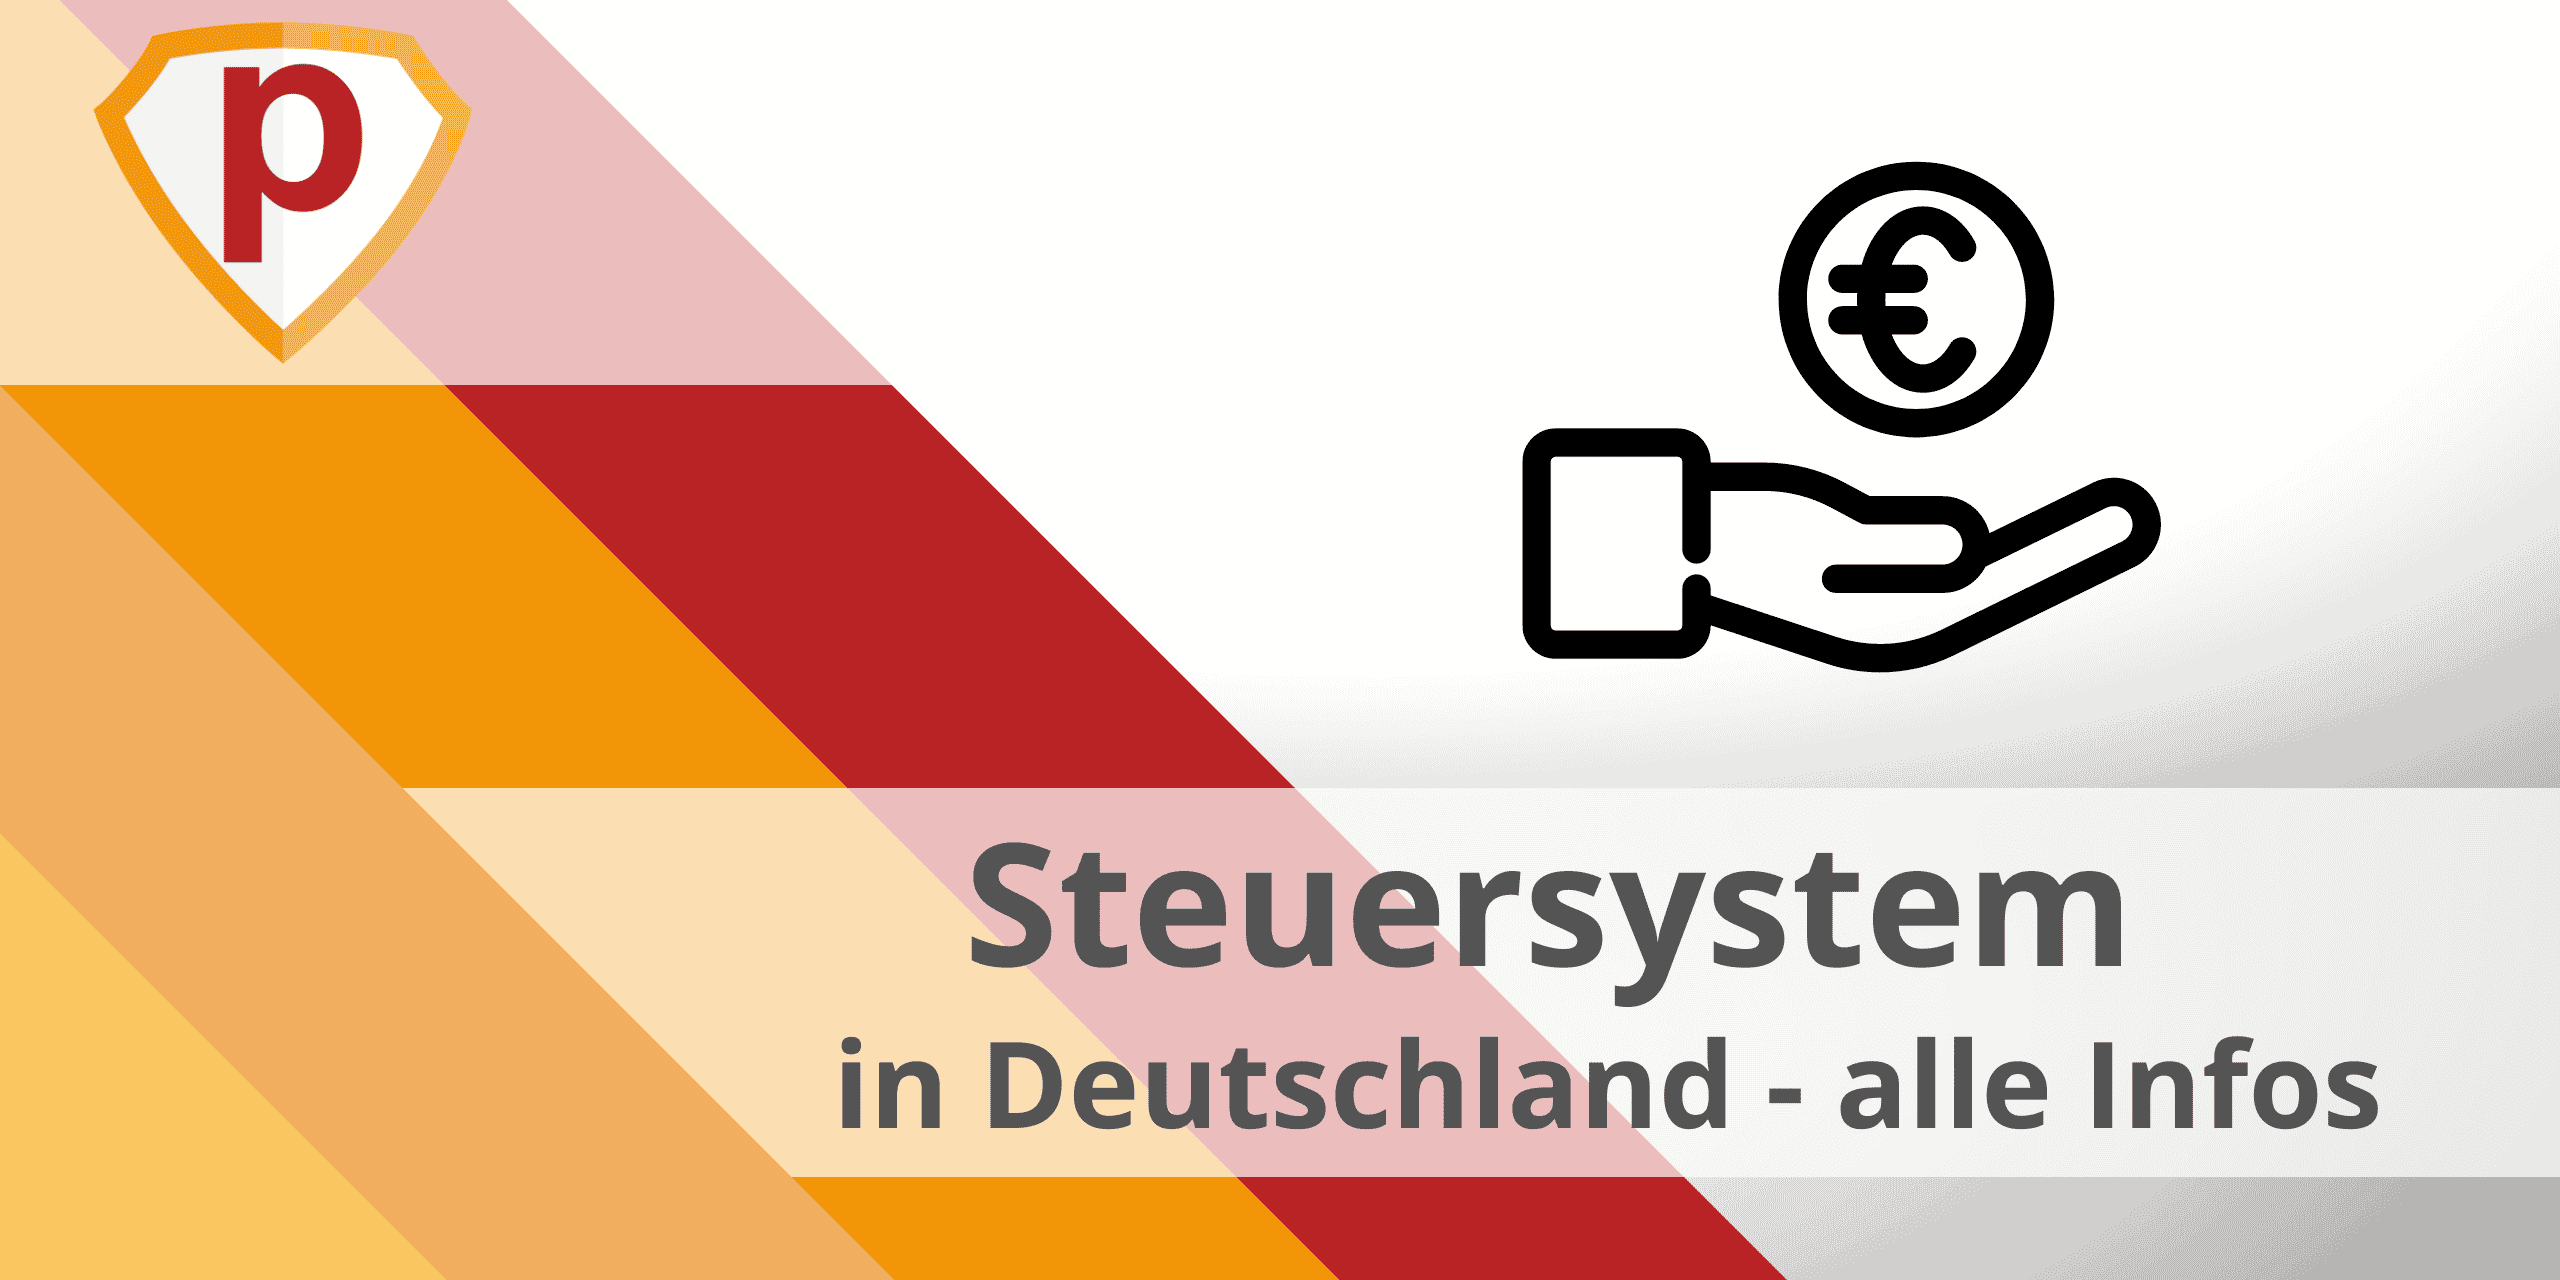 Steuersystem in Deutschland